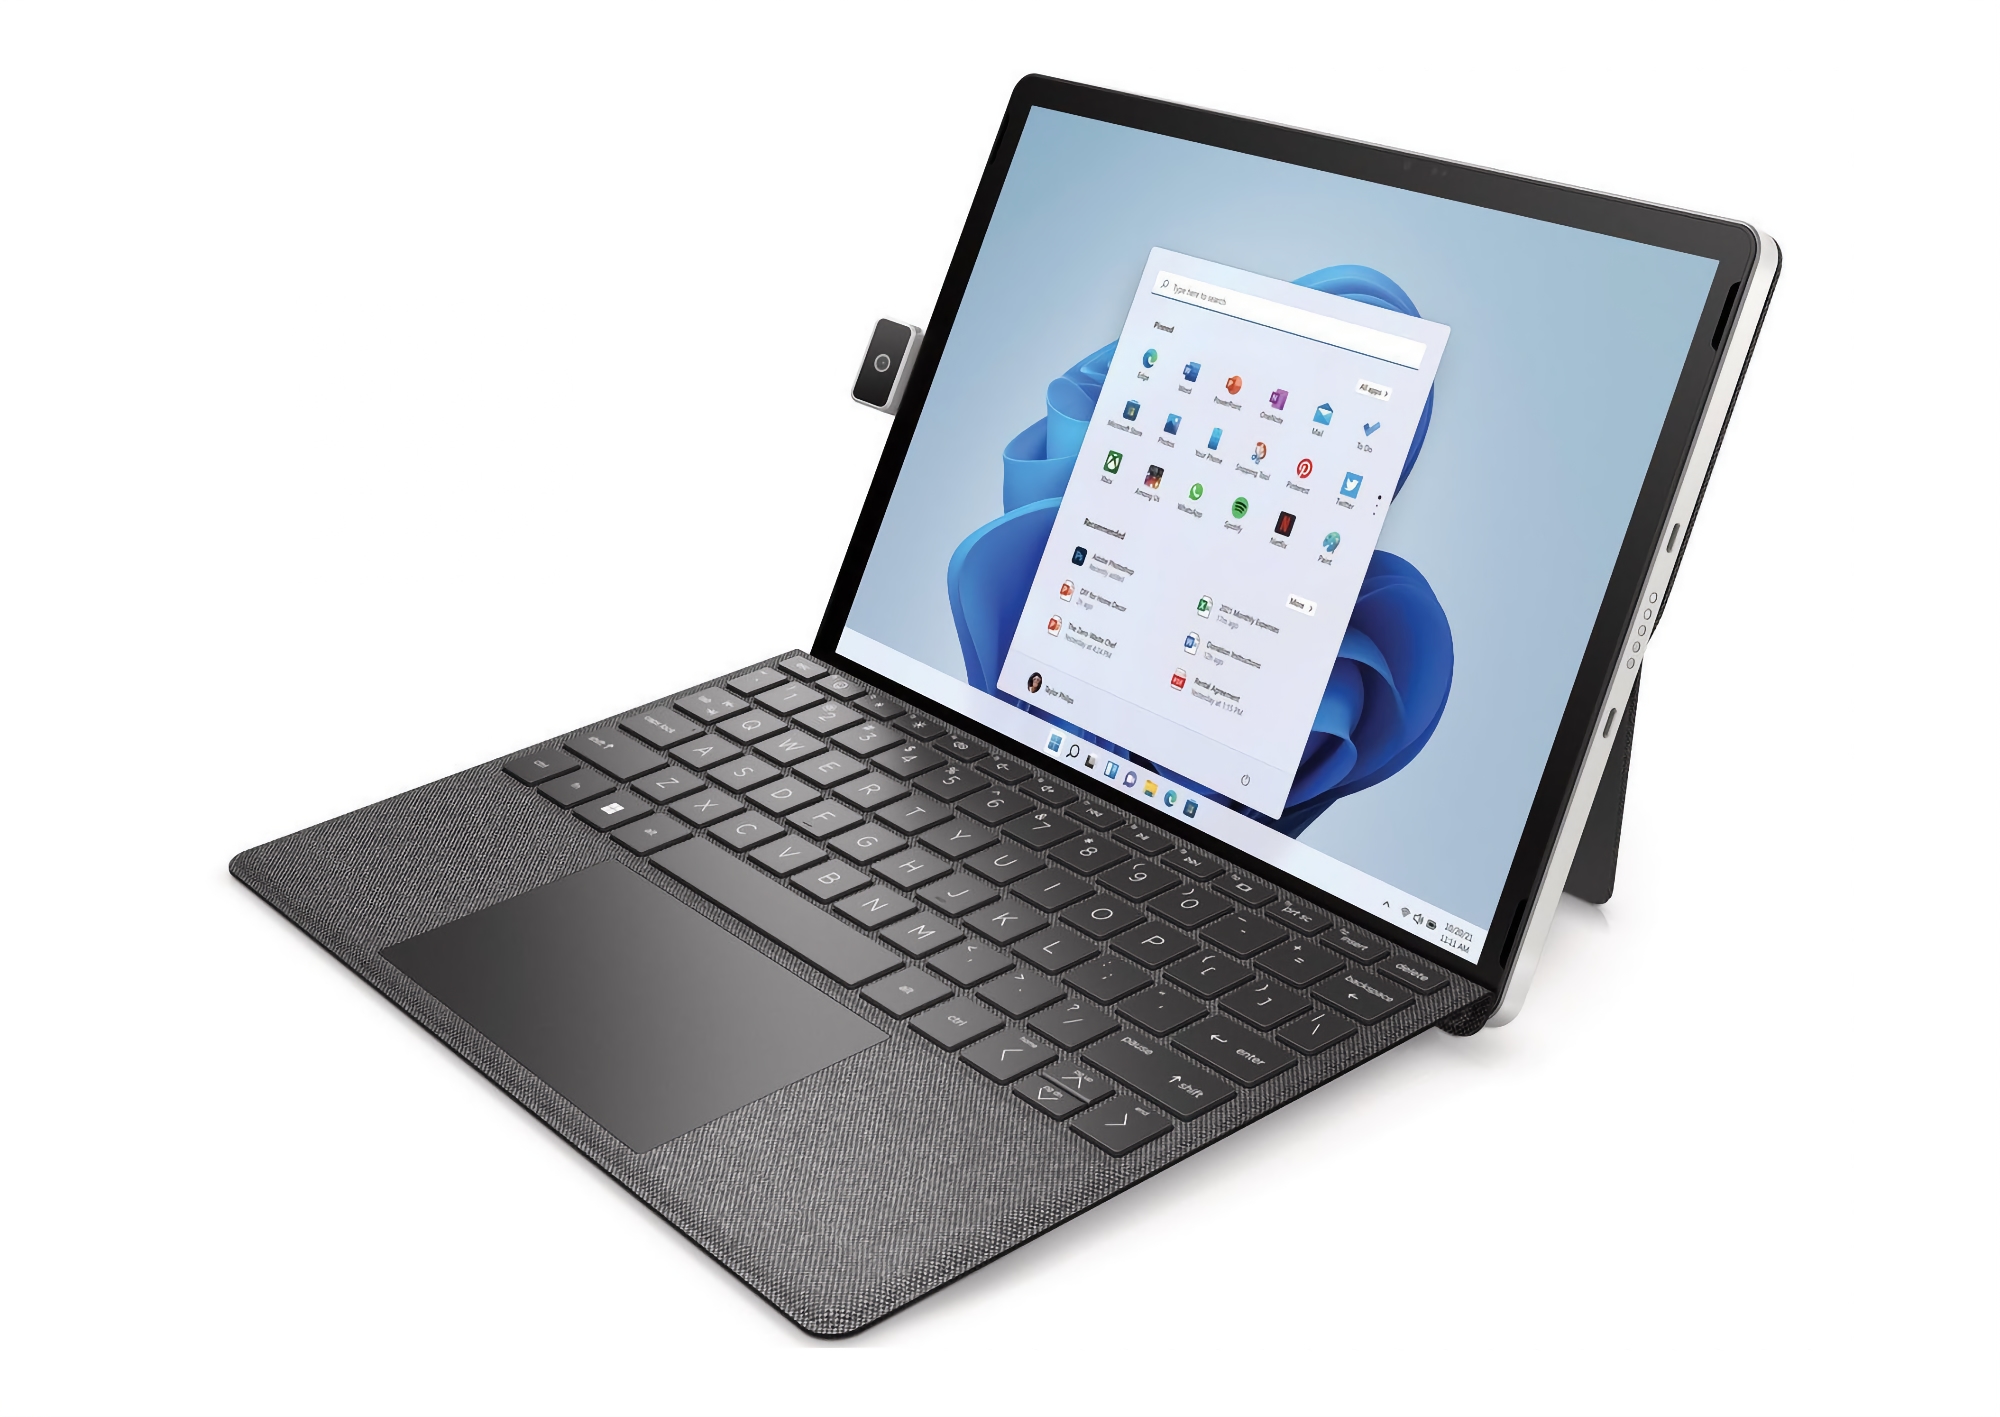 Firma HP rozpoczęła sprzedaż 11-calowego tabletu z systemem Windows 11 na pokładzie i obrotowym aparatem, takim jak ASUS ZenFone 8 Flip